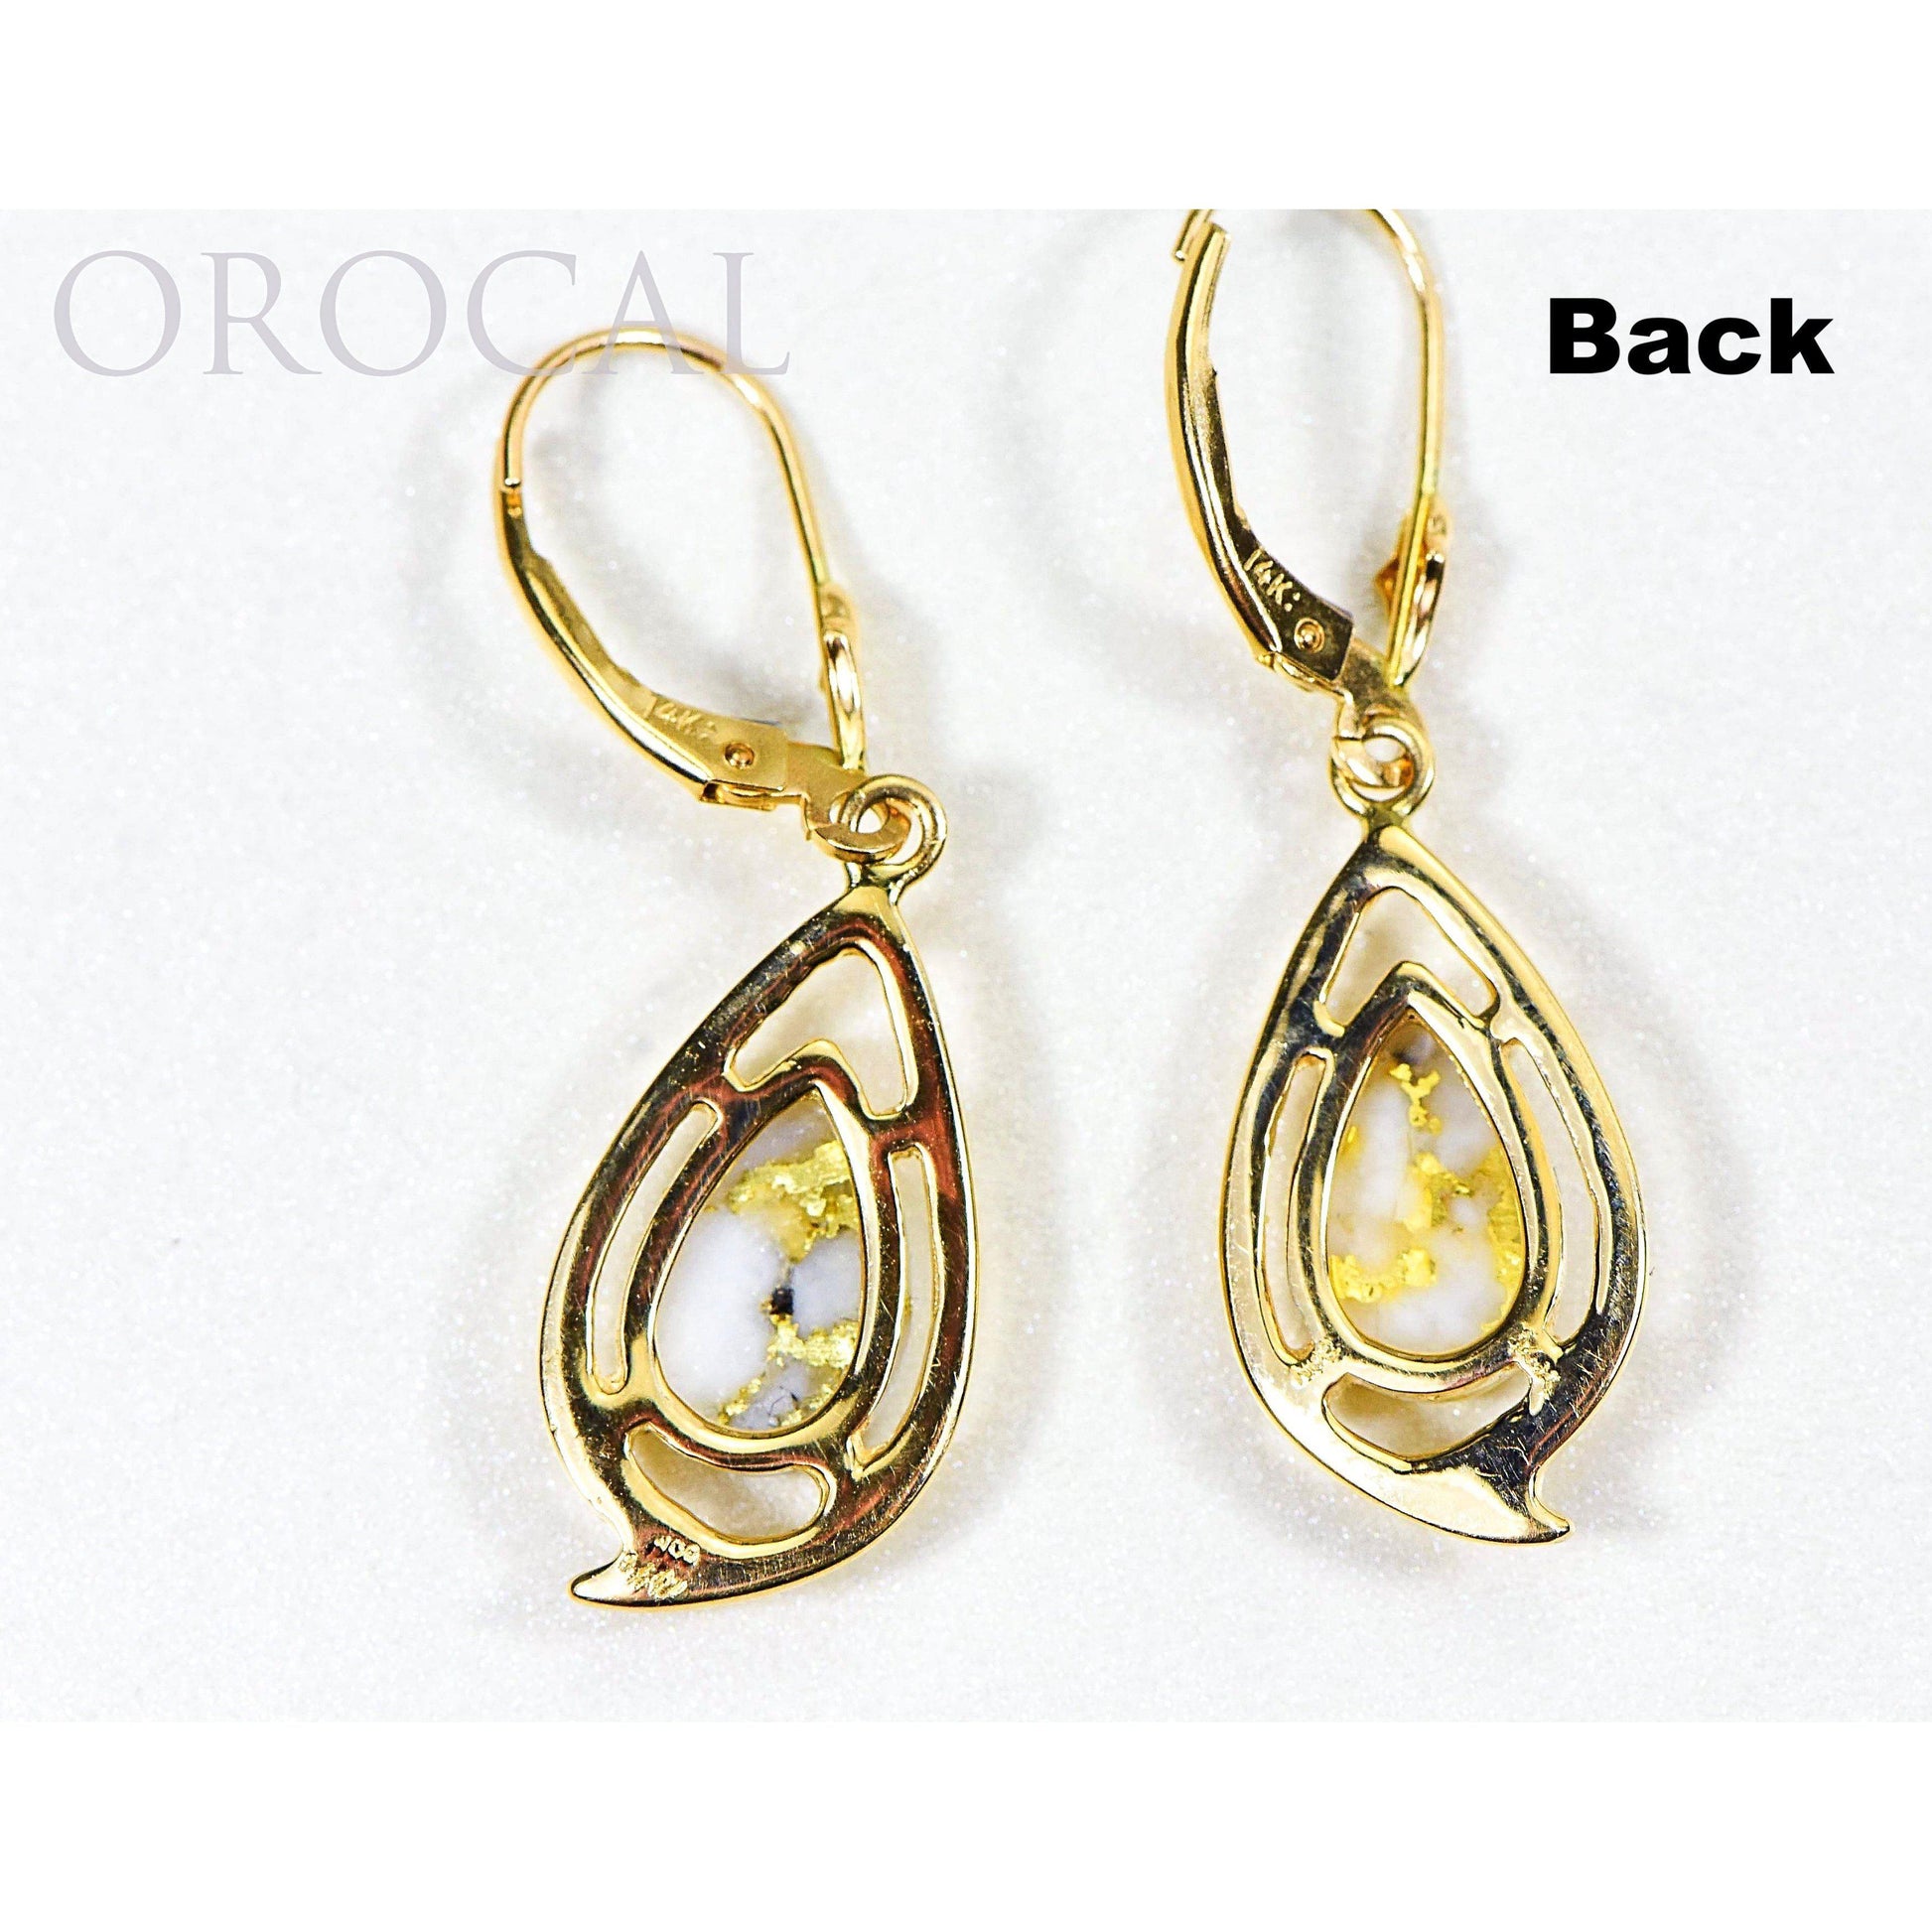 Orocal Gold Quartz Earrings Dangling EN774Q/LB-Destination Gold Detectors